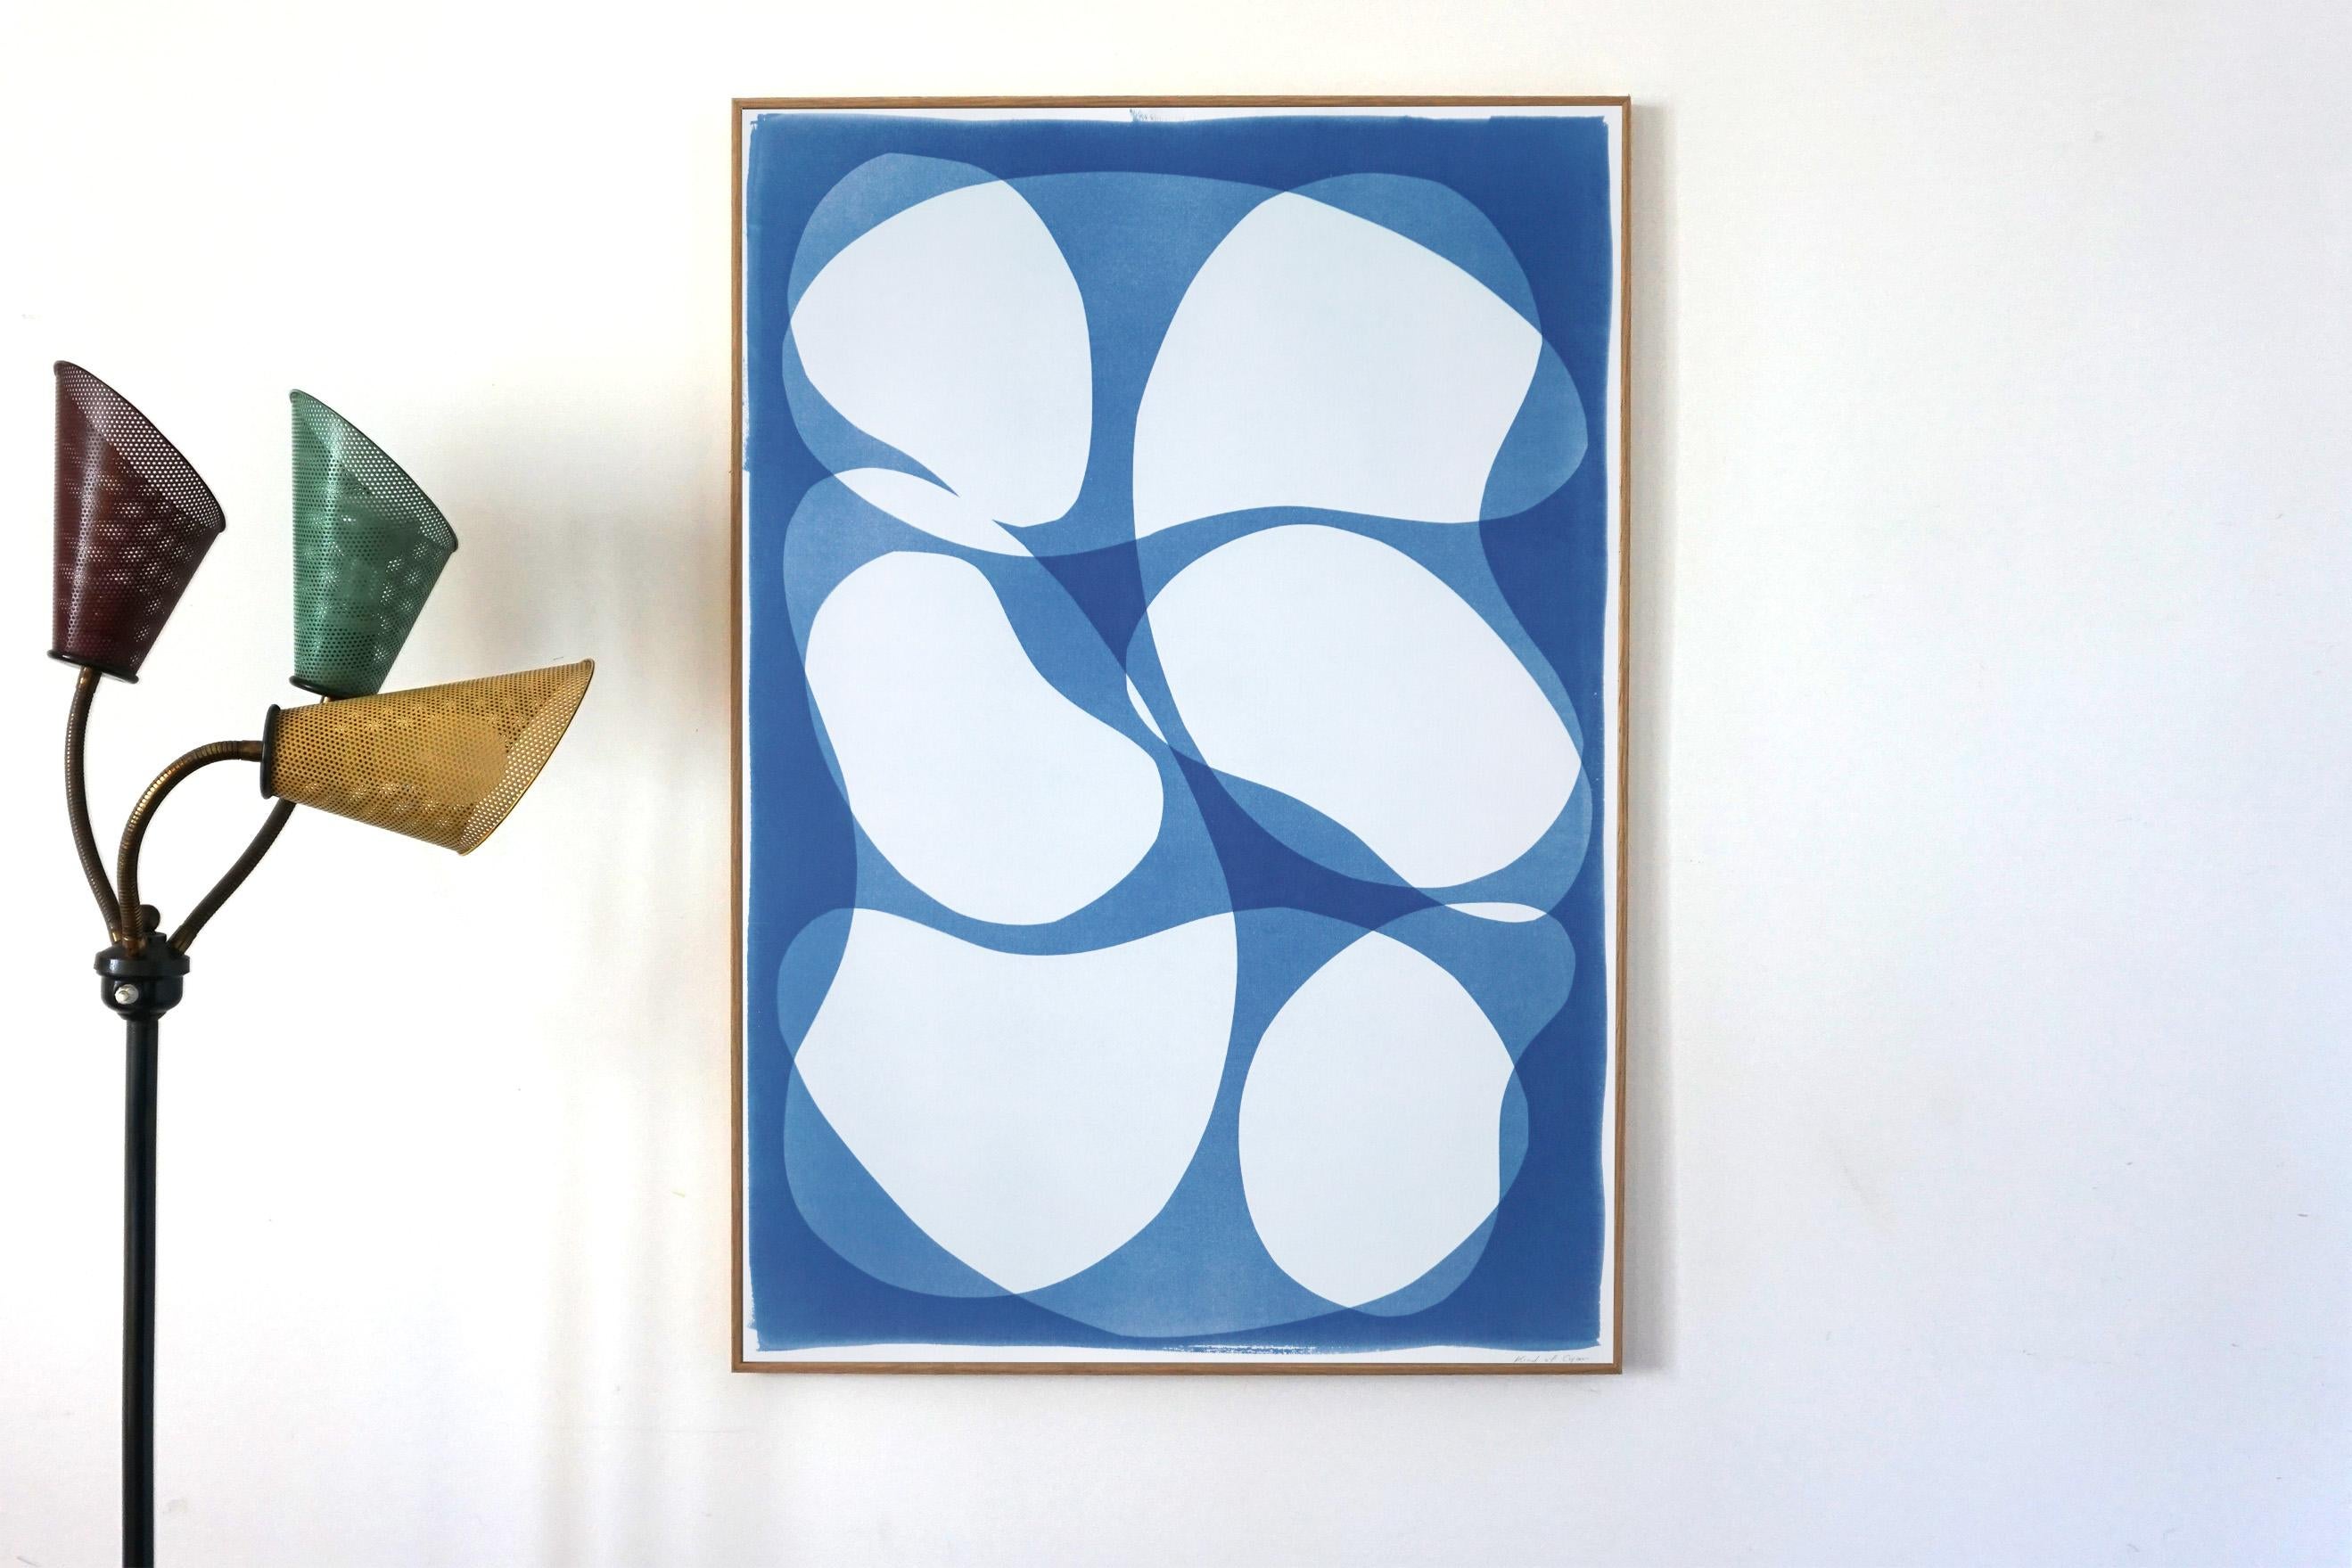 Handgefertigte Monotypie eines abstrakten, abgerundeten Typs, moderne Formen und Schichten, blaue Töne – Print von Kind of Cyan